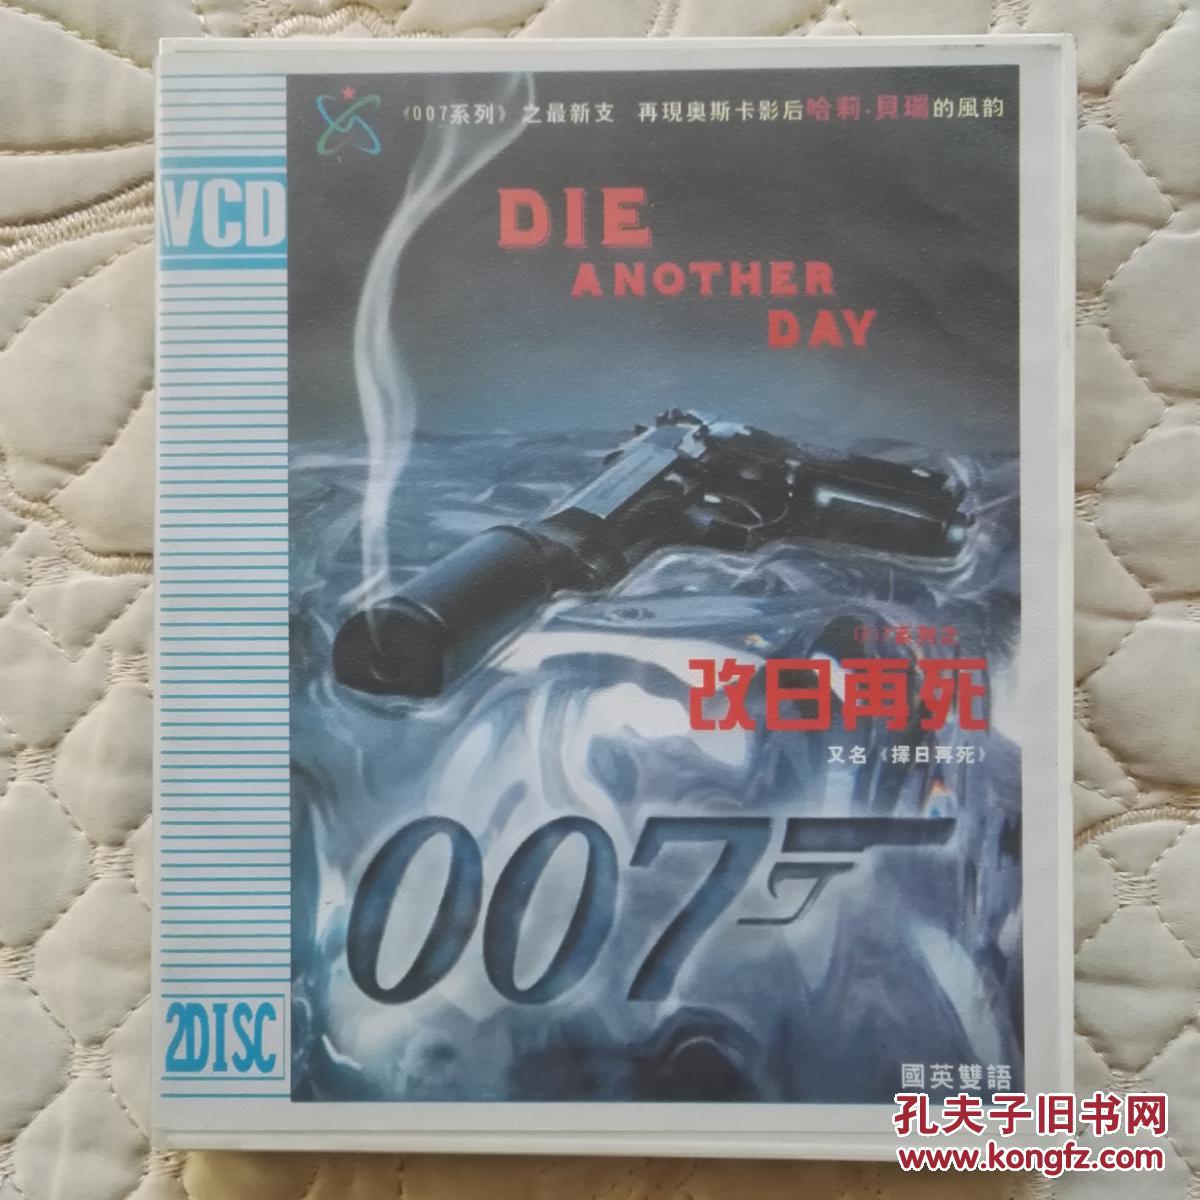 007择日再死(以后再死)VCD影碟